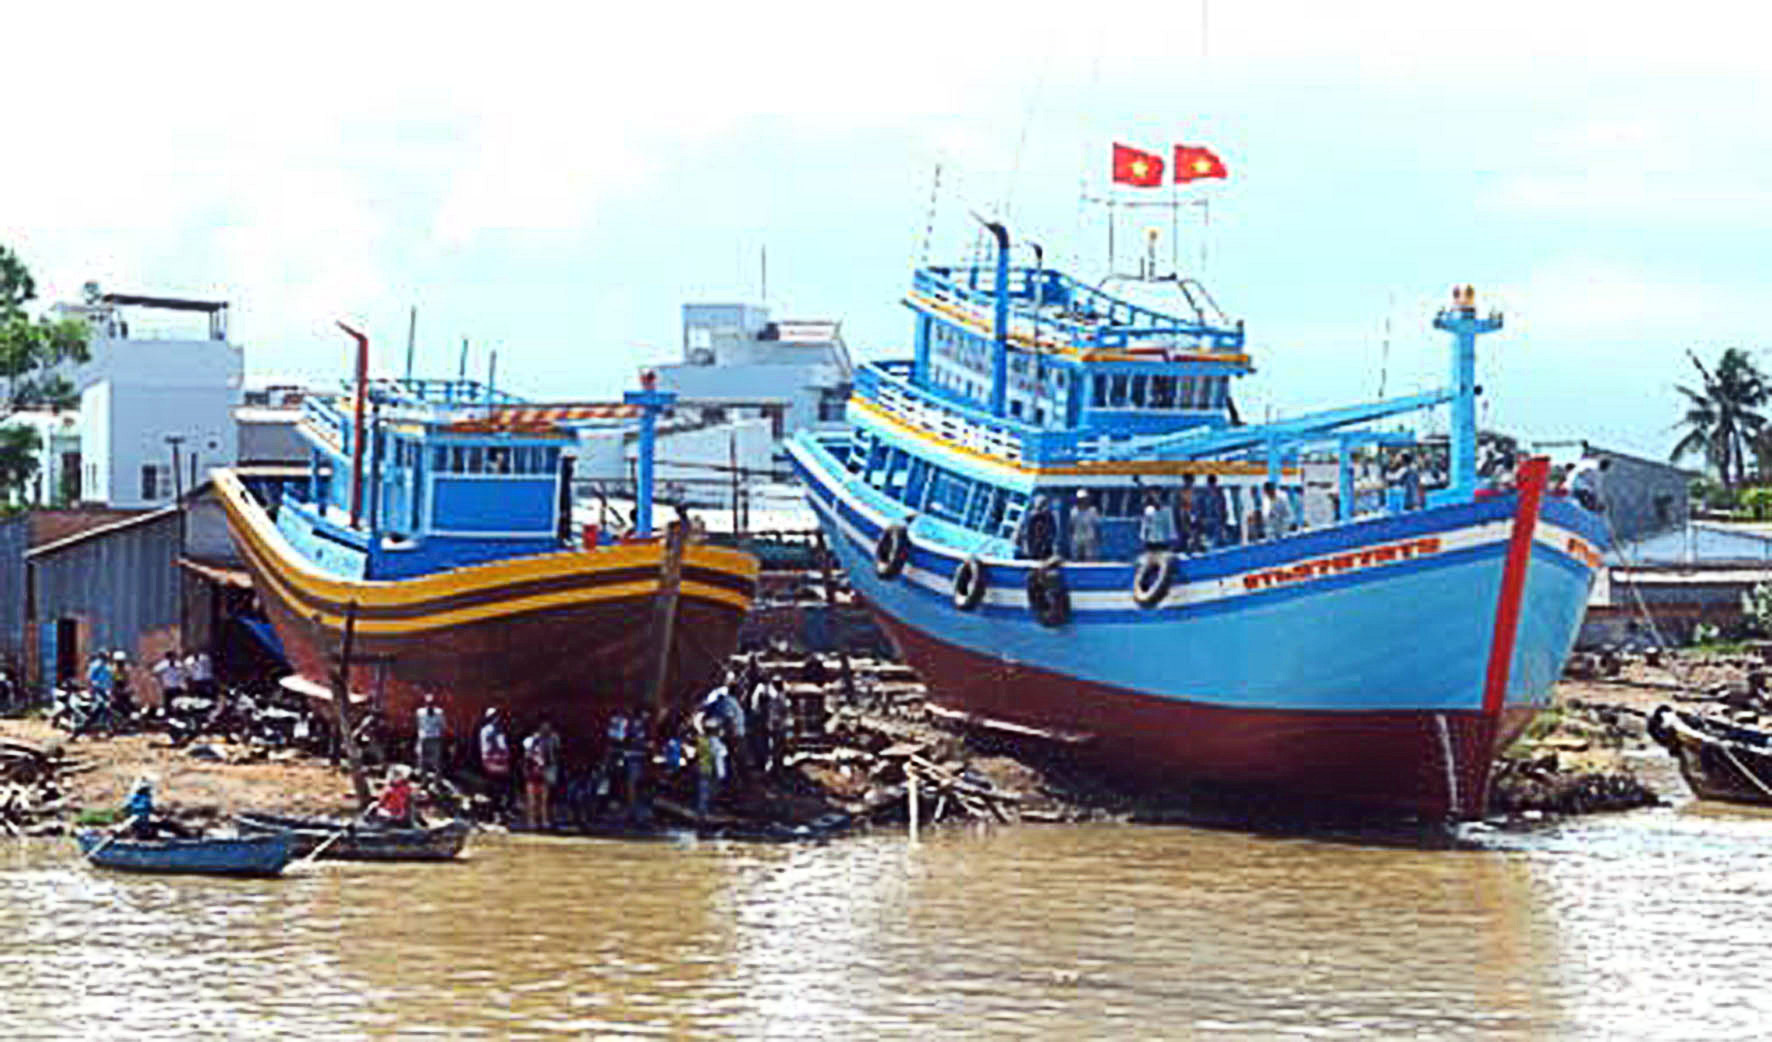 Bình Thuận đóng tàu theo Nghị định 67 cho ngư dân - Báo Hải Quân Việt Nam